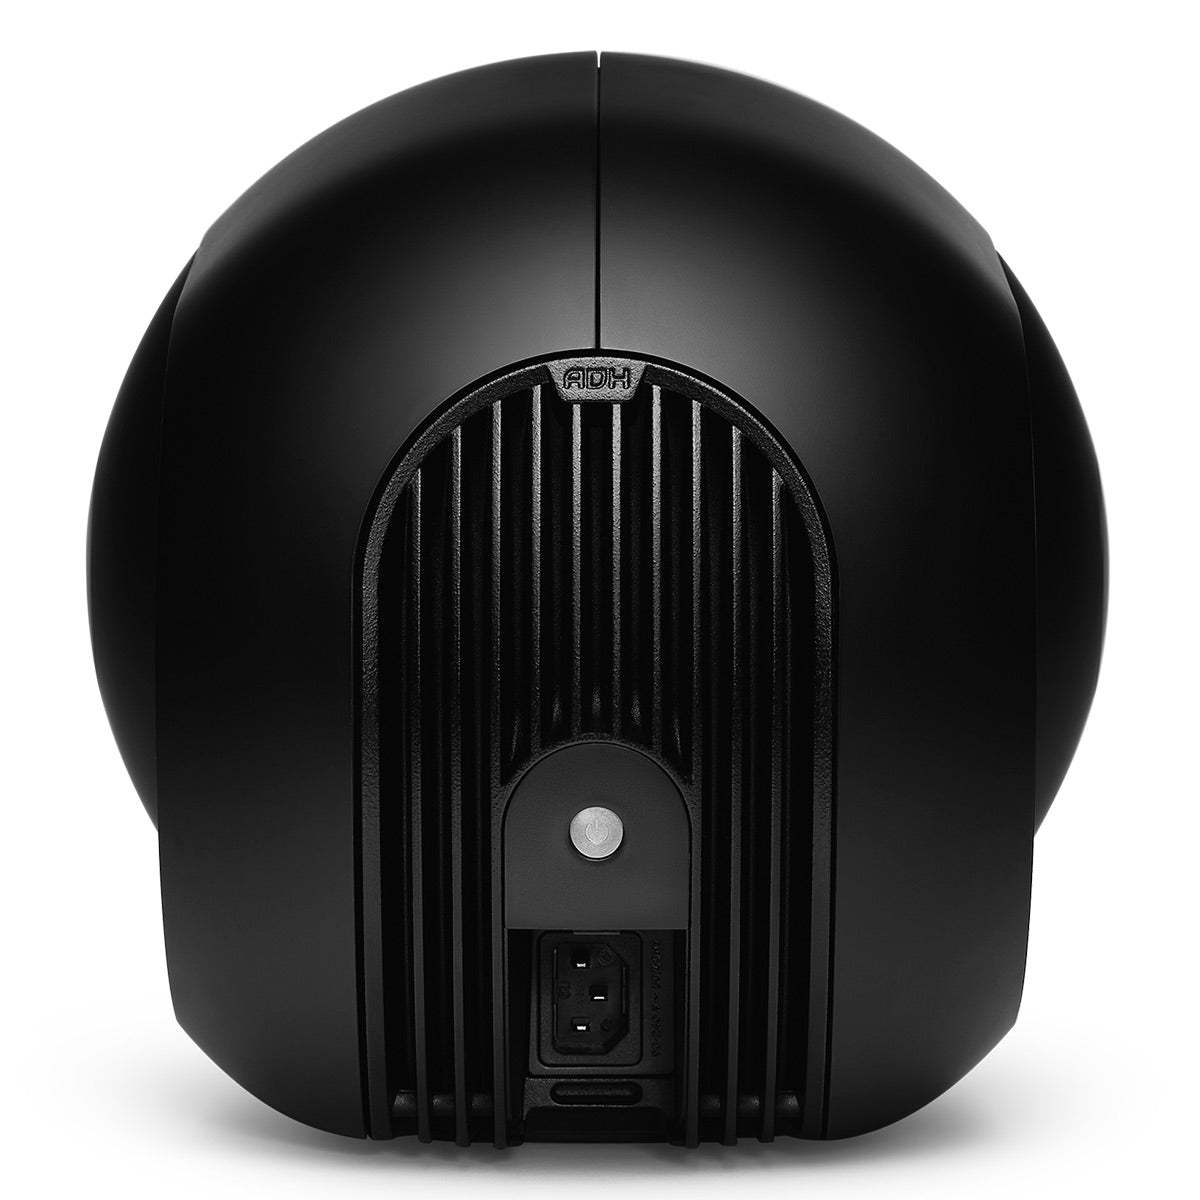 Devialet Phantom I 103dB High-End Wireless Speaker (Matte Black)